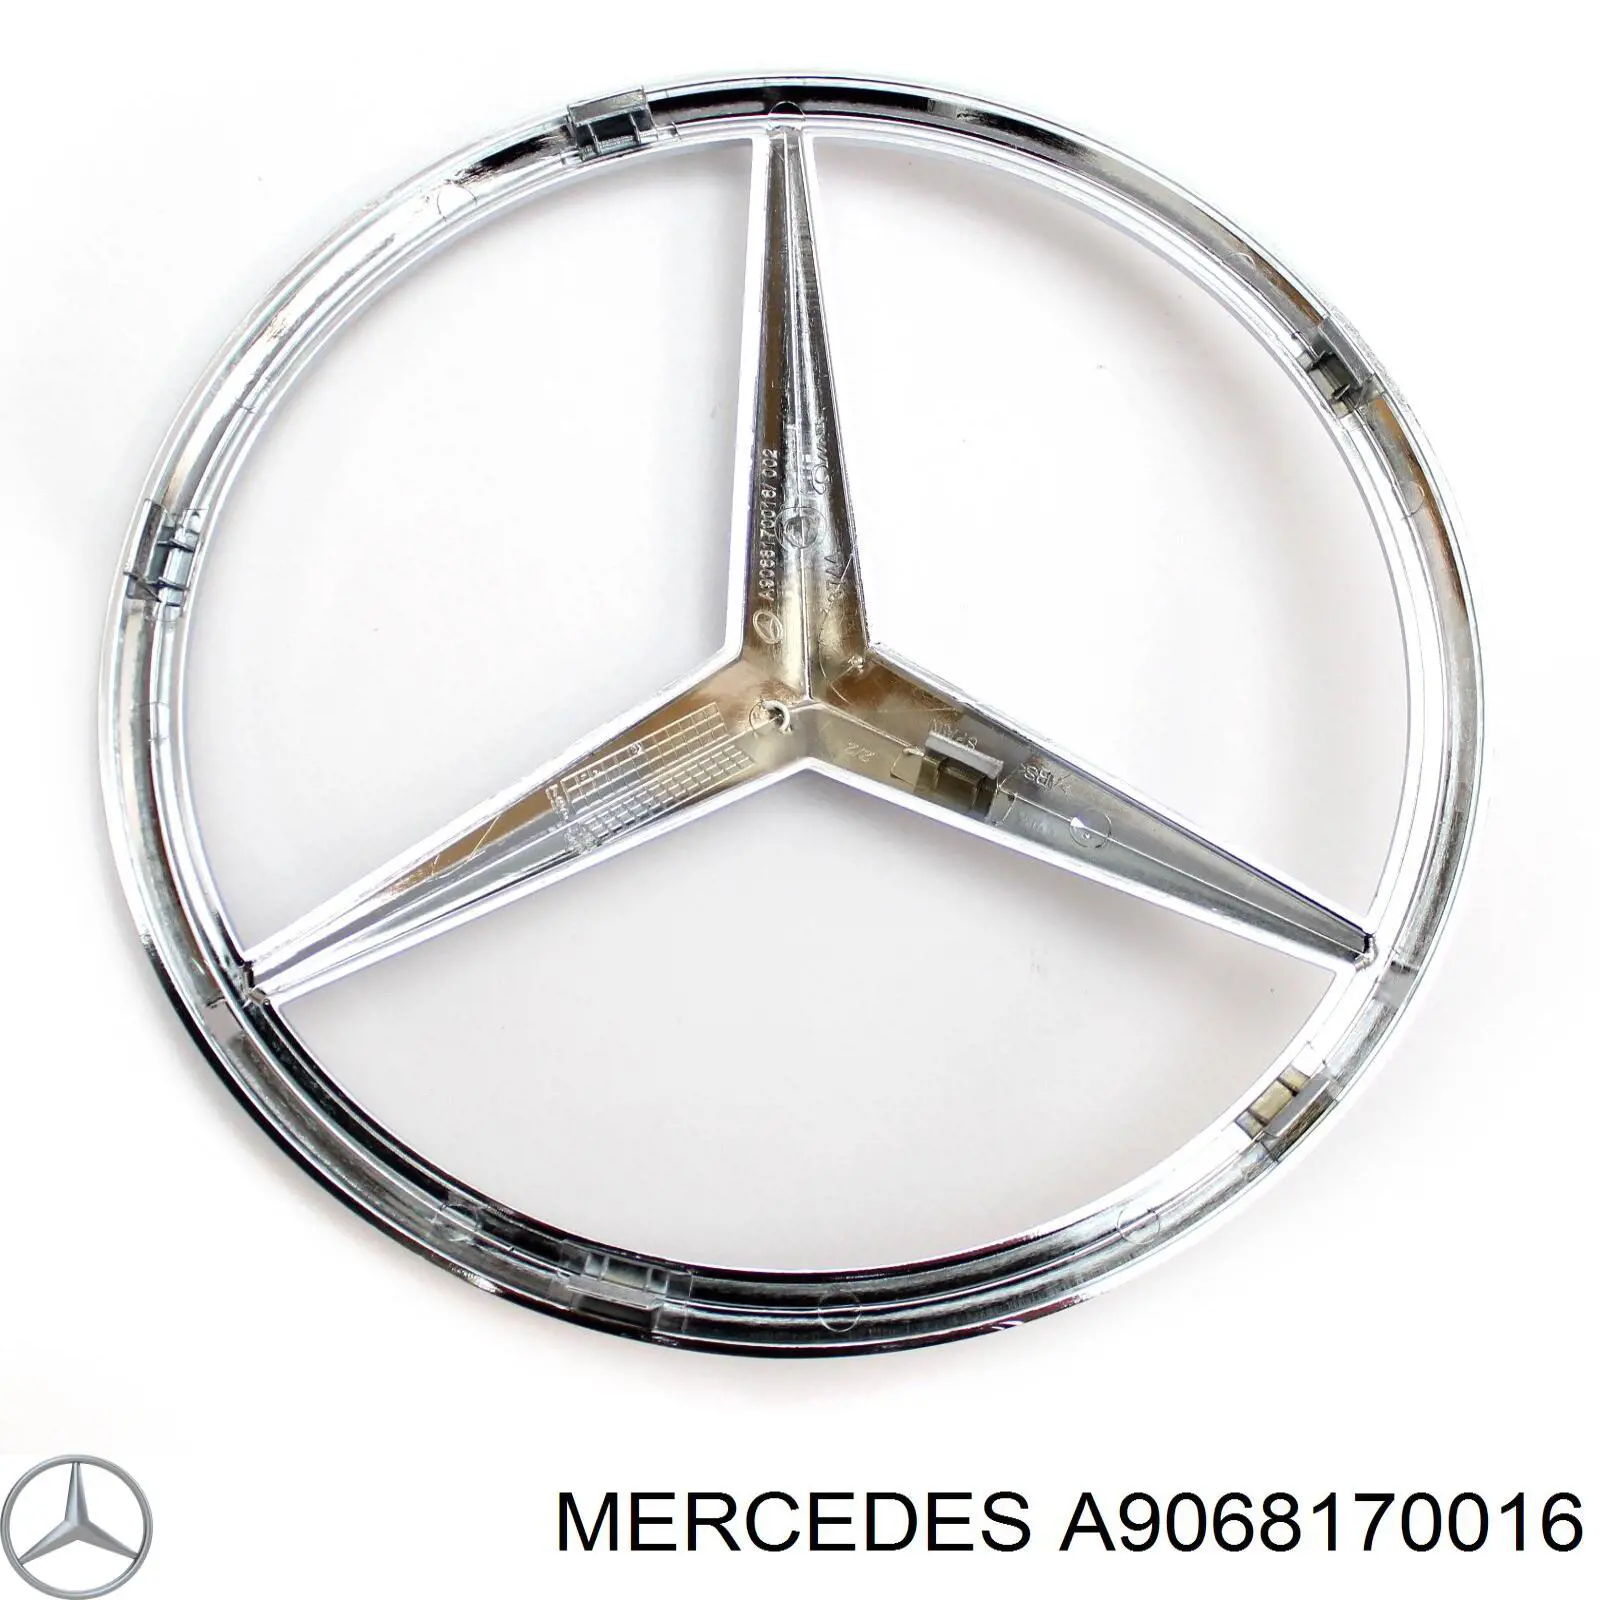 A9068170016 Mercedes emblema de grelha do radiador